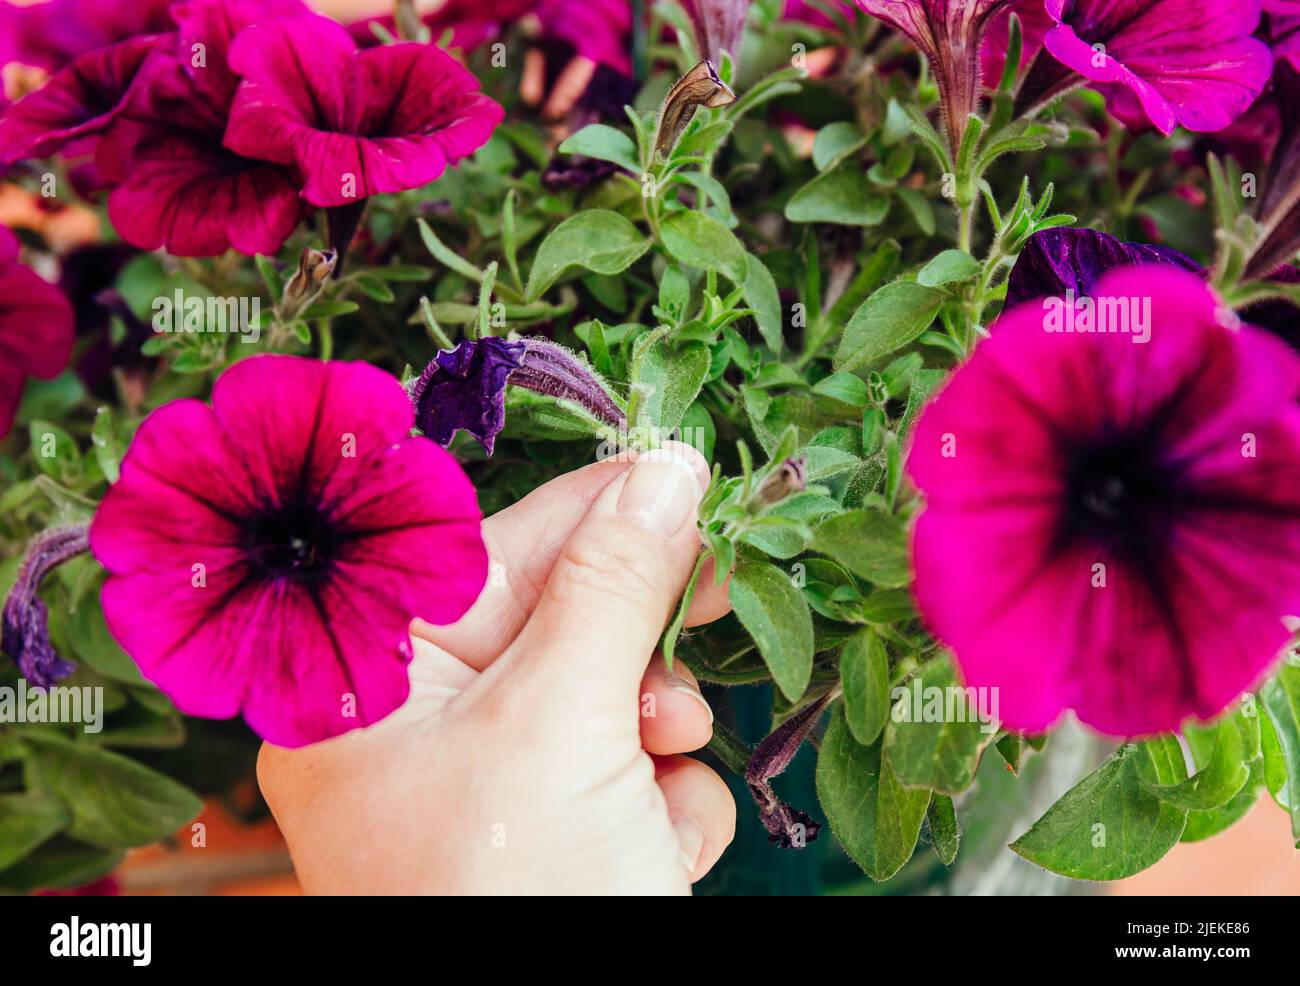 Kneifen oder schneiden Sie die schlaffen Petunia-Blüten ab, bevor sie mit dem Aussaat beginnen, um das Nachwachsen zu fördern. Hackkonzept für den Garten. Stockfoto